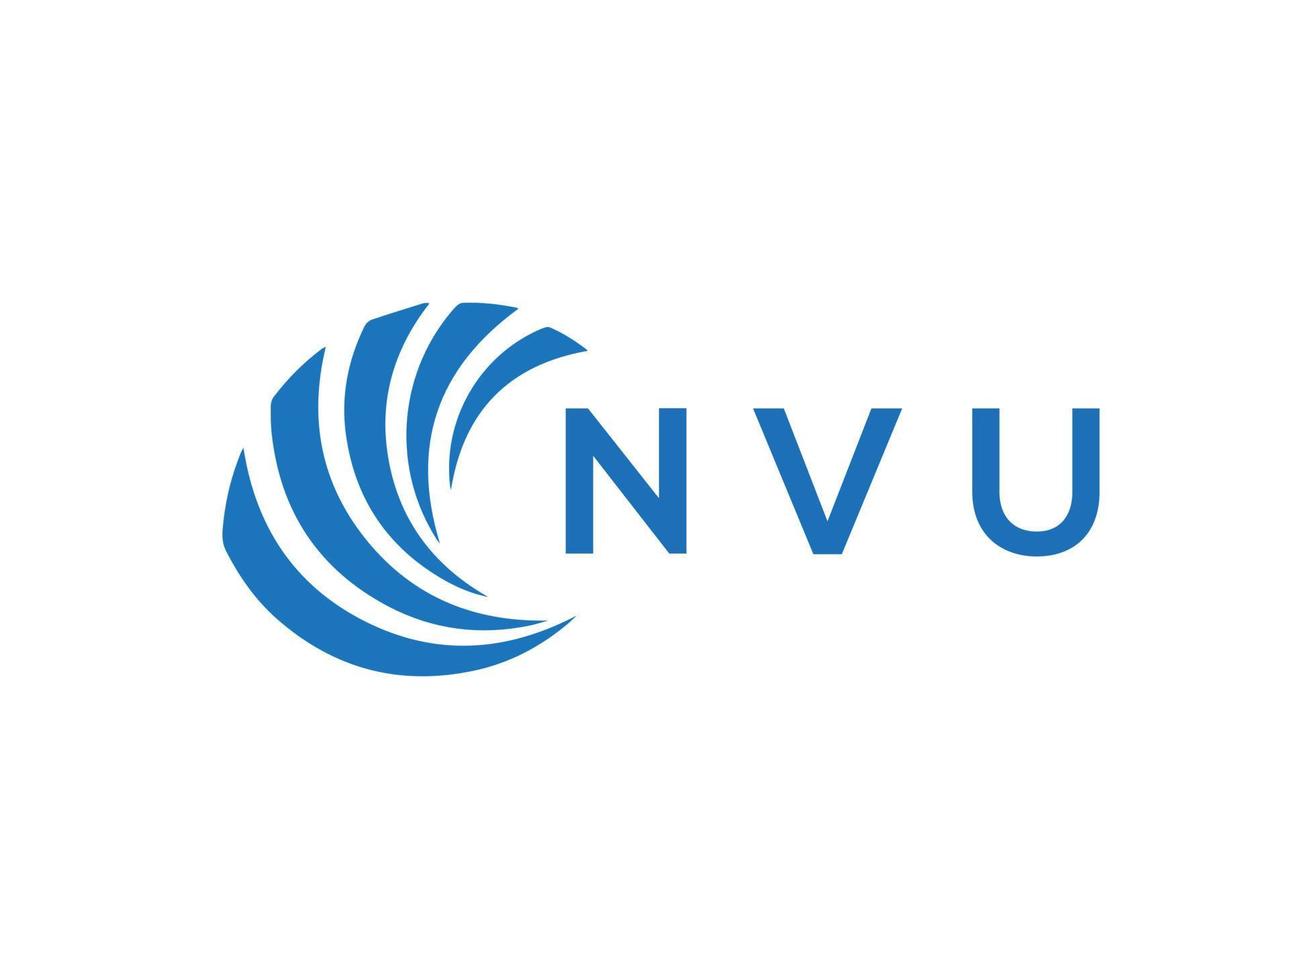 NVU letter logo design on white background. NVU creative circle letter logo concept. NVU letter design. vector